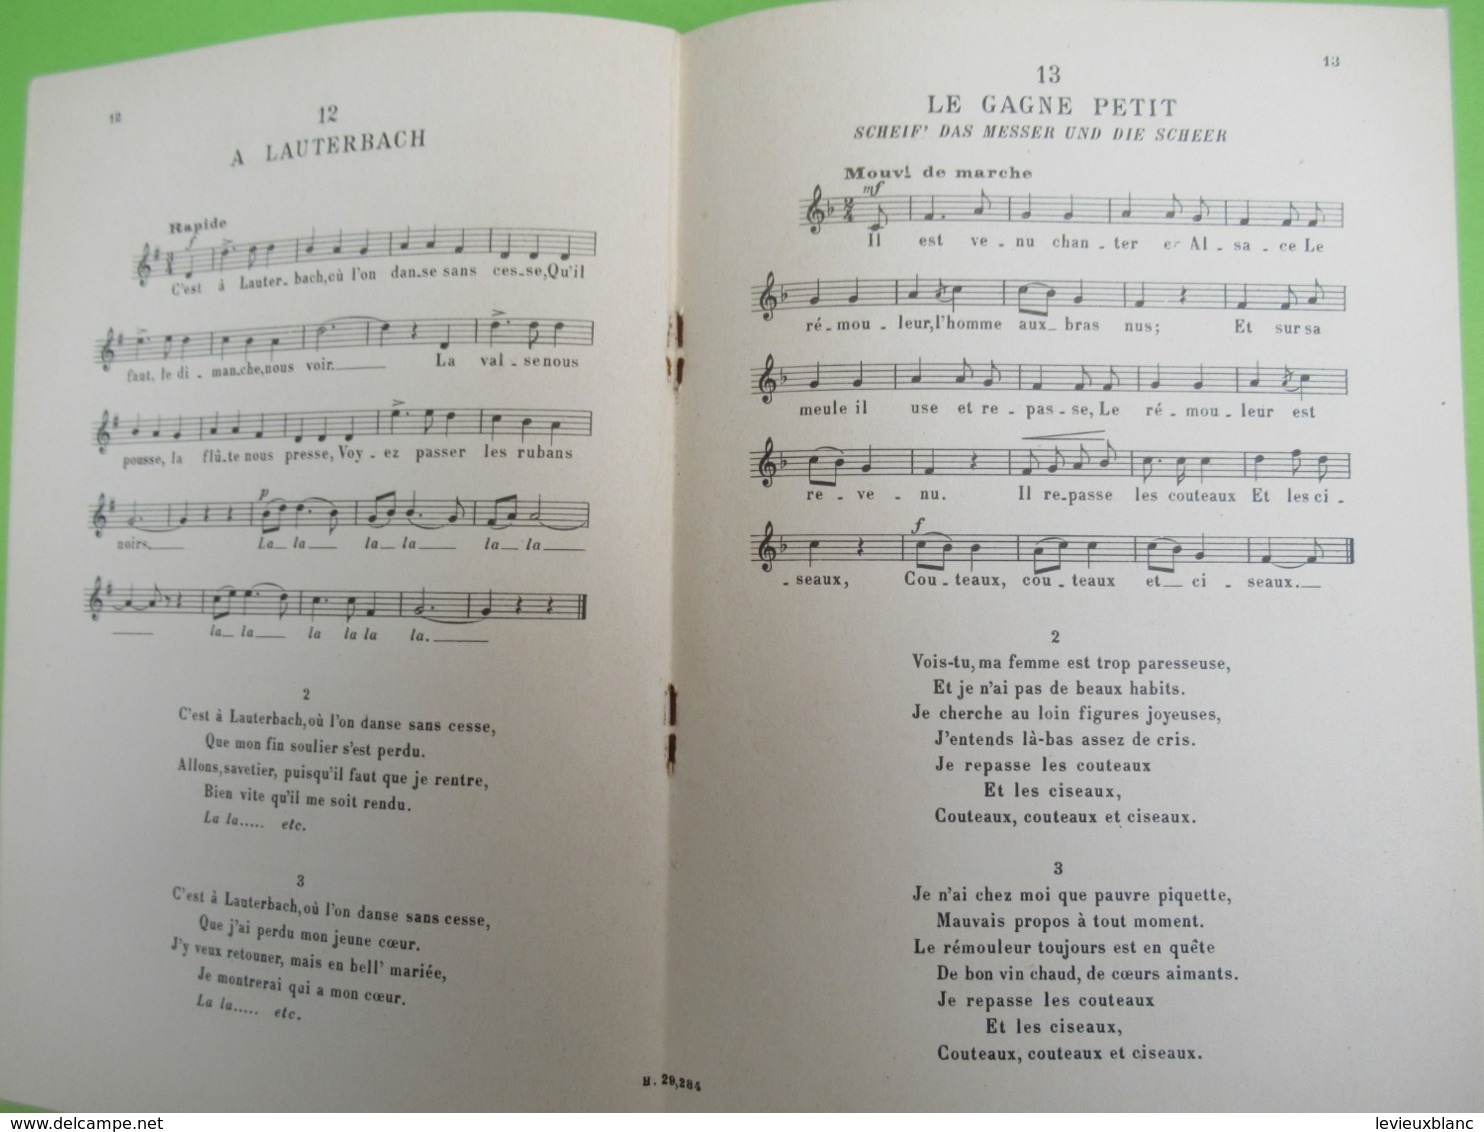 Livre /Anthologie Du Chant Scolaire Et Post-Scolaire/Chansons Populaires Des Provinces De France.ALSACE/1926    PART276 - Music